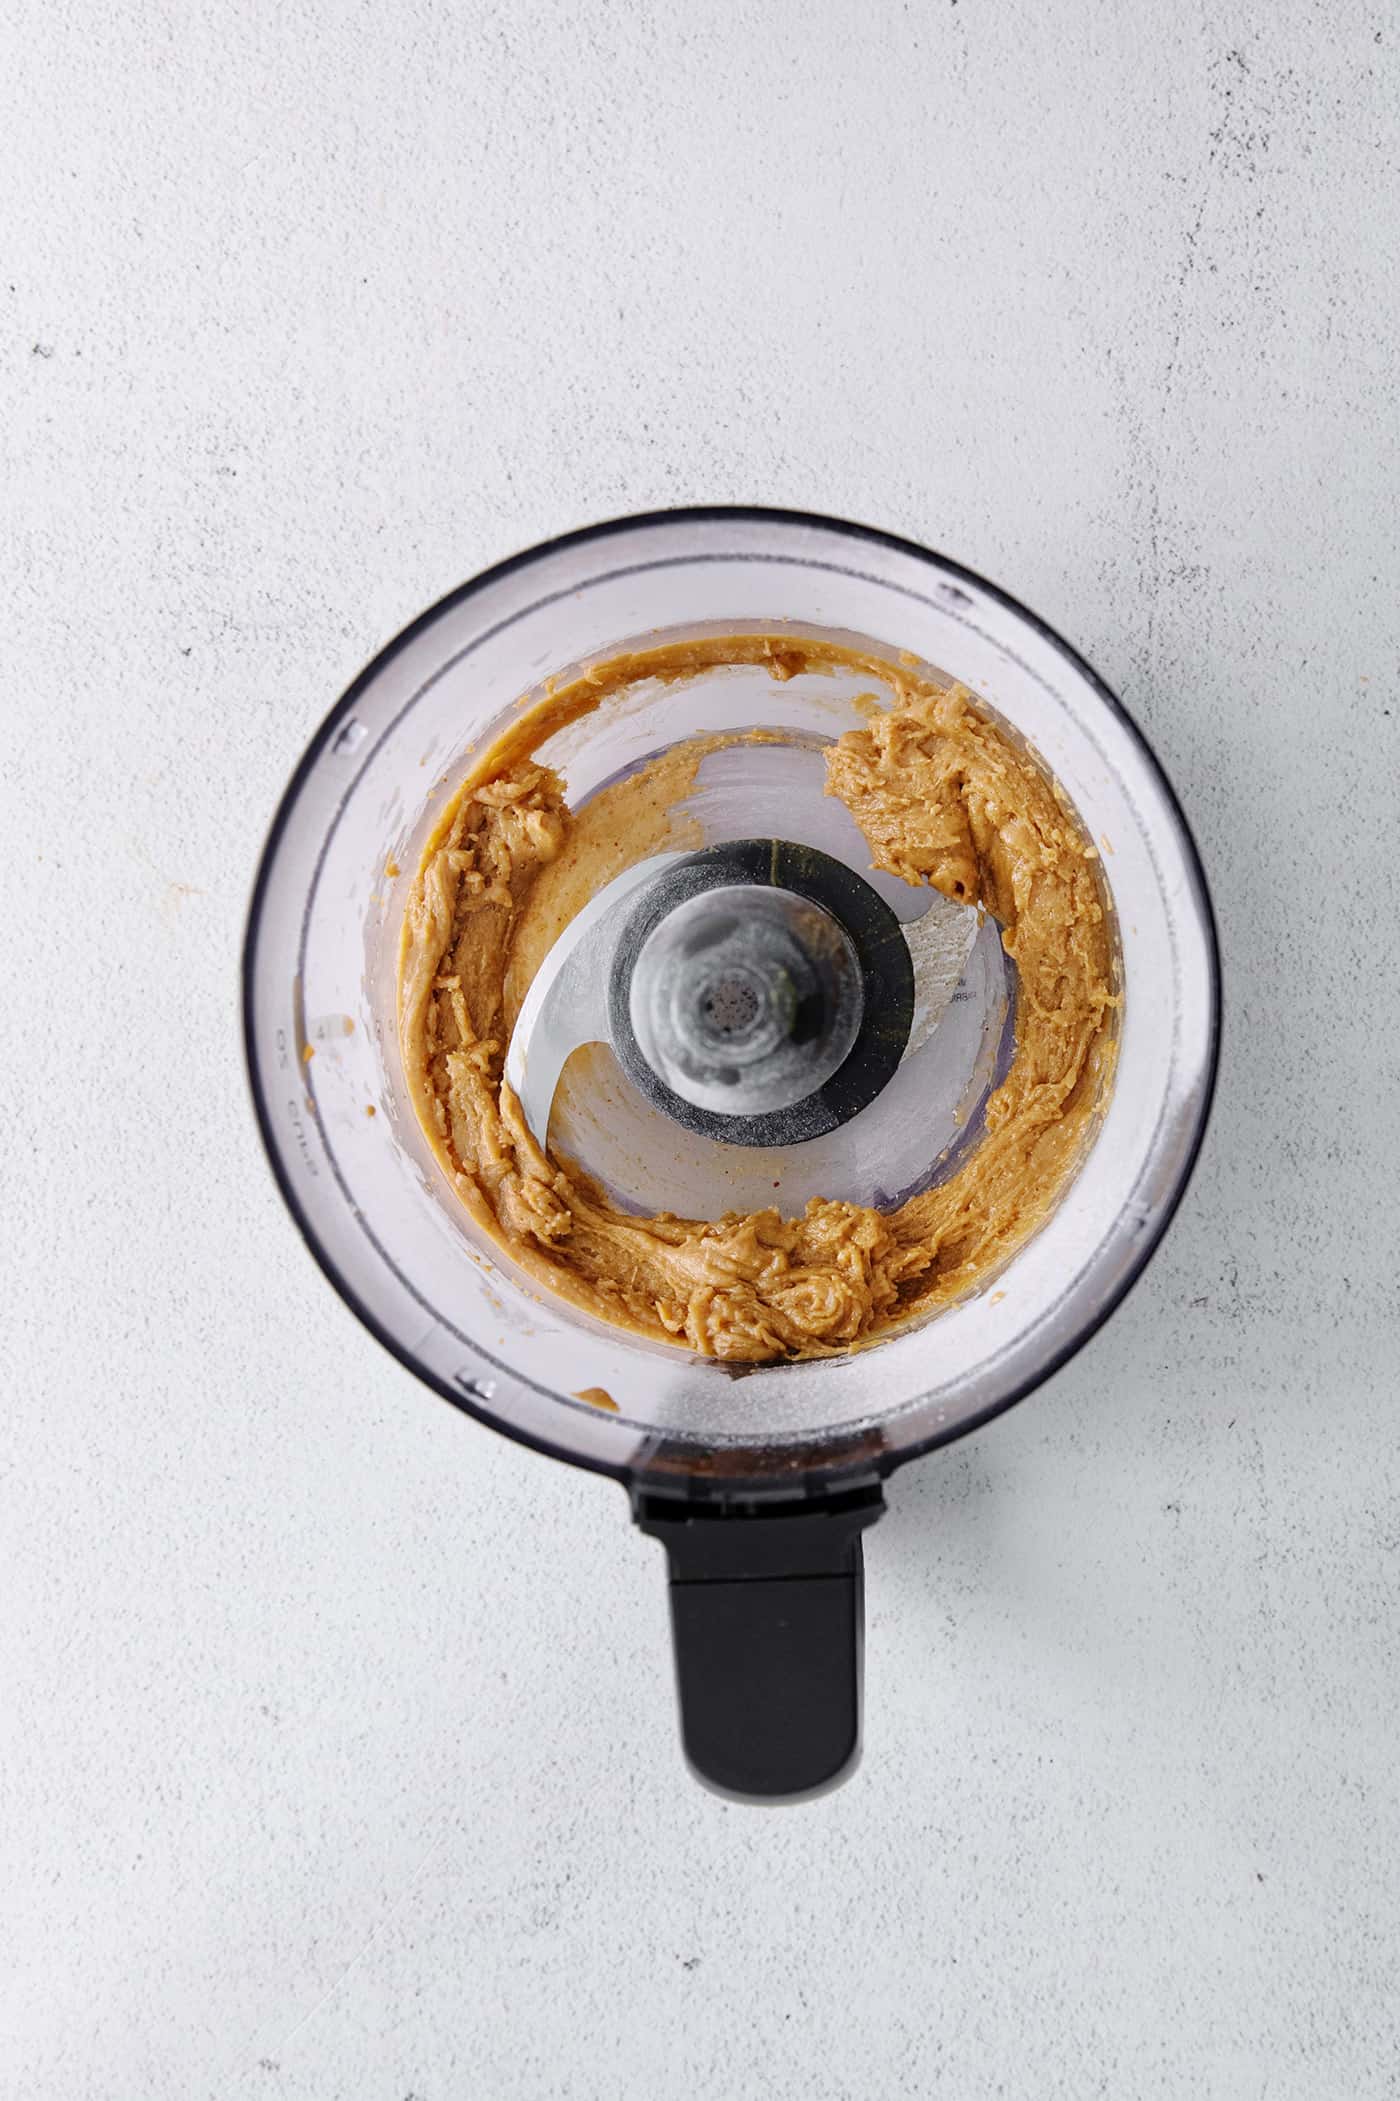 Peanut butter pulse in a food processor